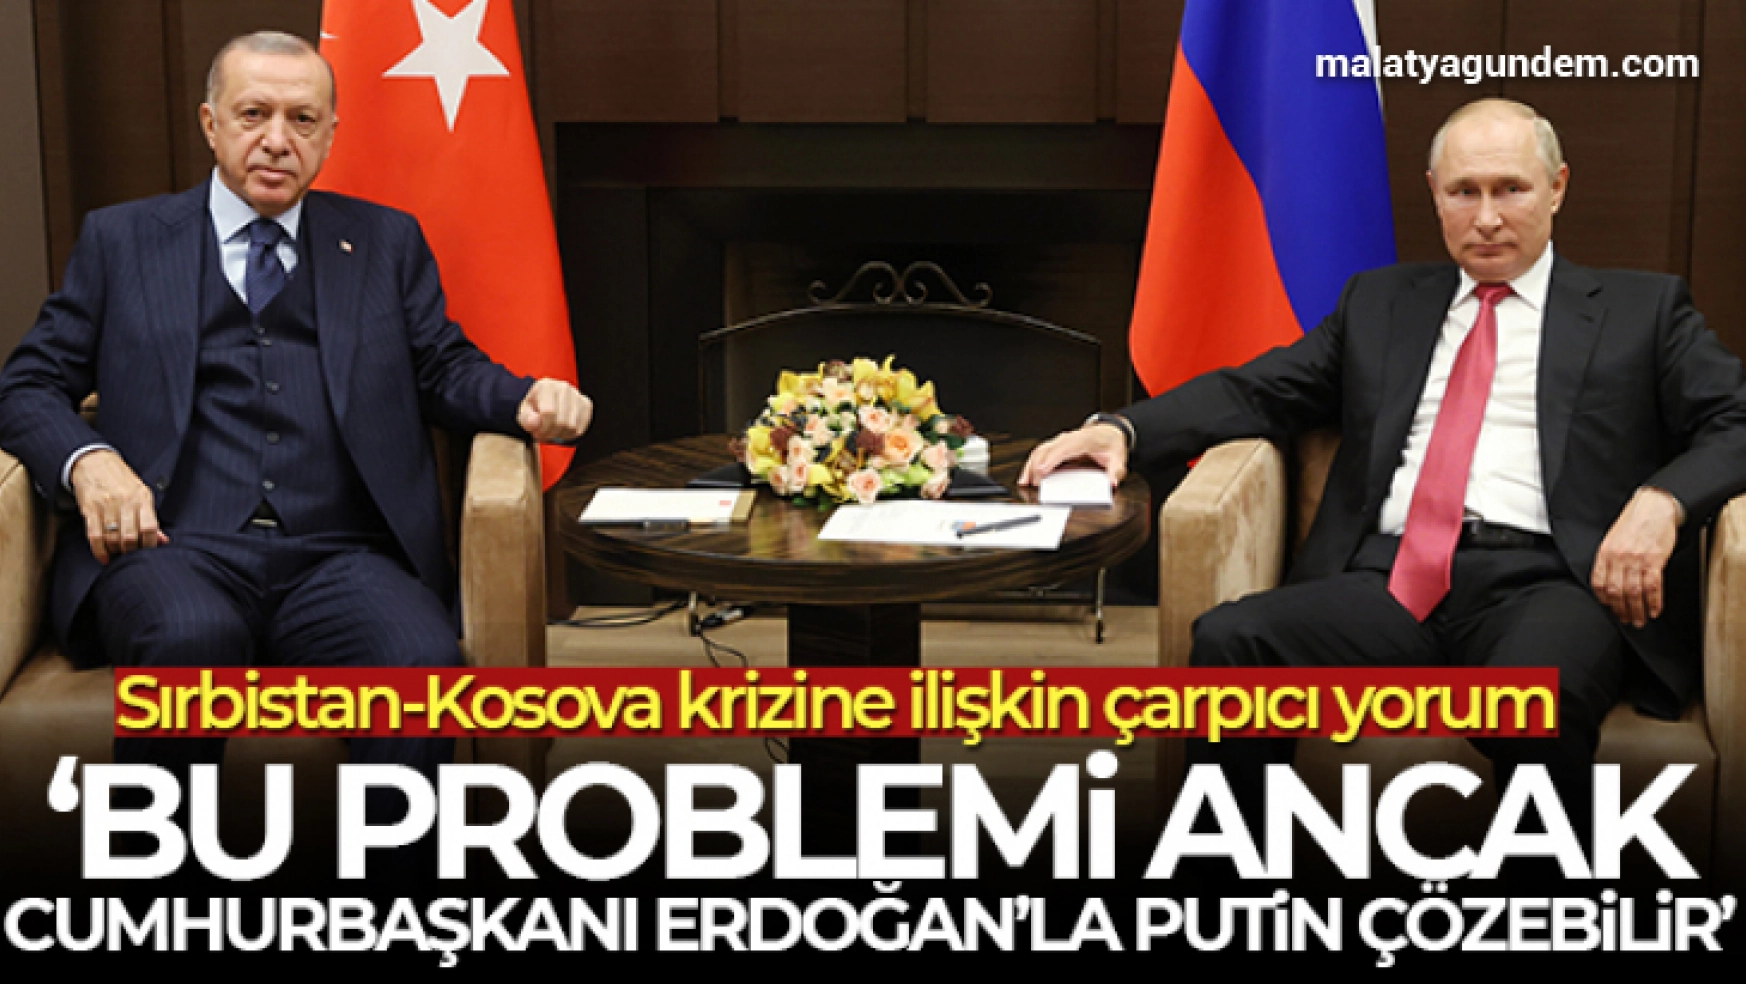 Prof. Dr. Oktay: '(Sırbistan-Kosova) Bu problemi ancak Cumhurbaşkanı Erdoğan'la Putin çözebilir'